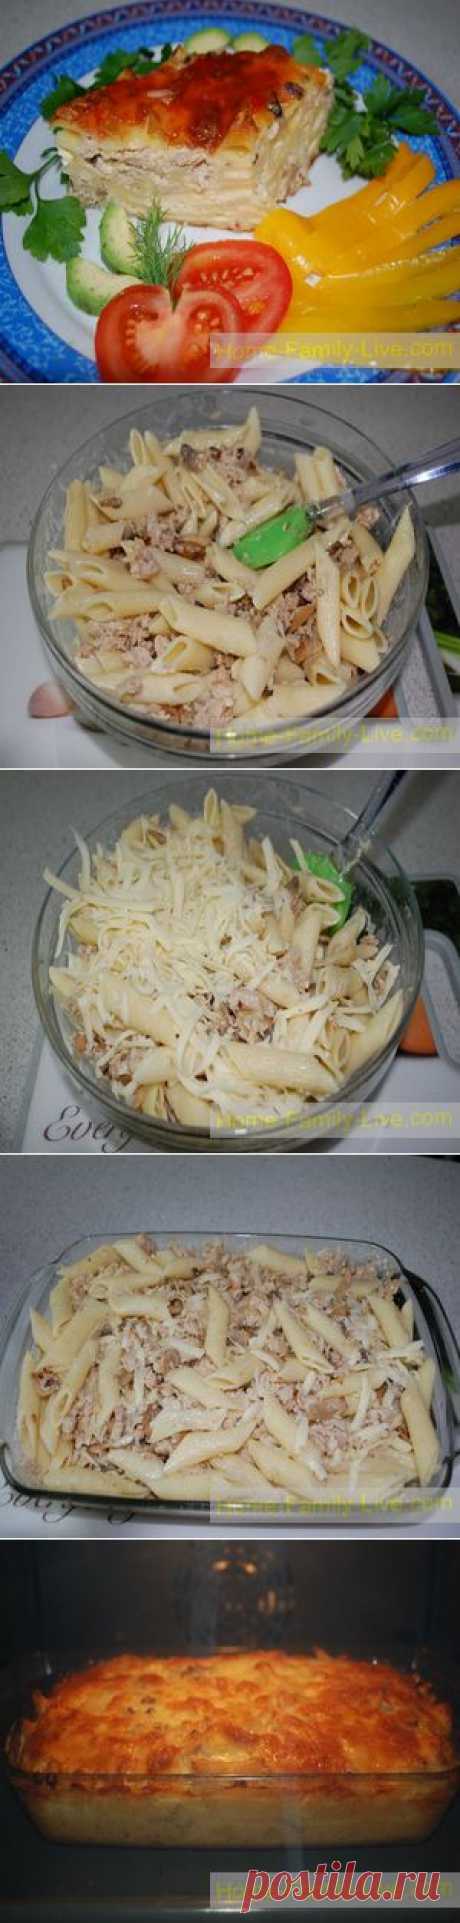 Запеканка из макарон с фаршем - Кулинарные рецепты